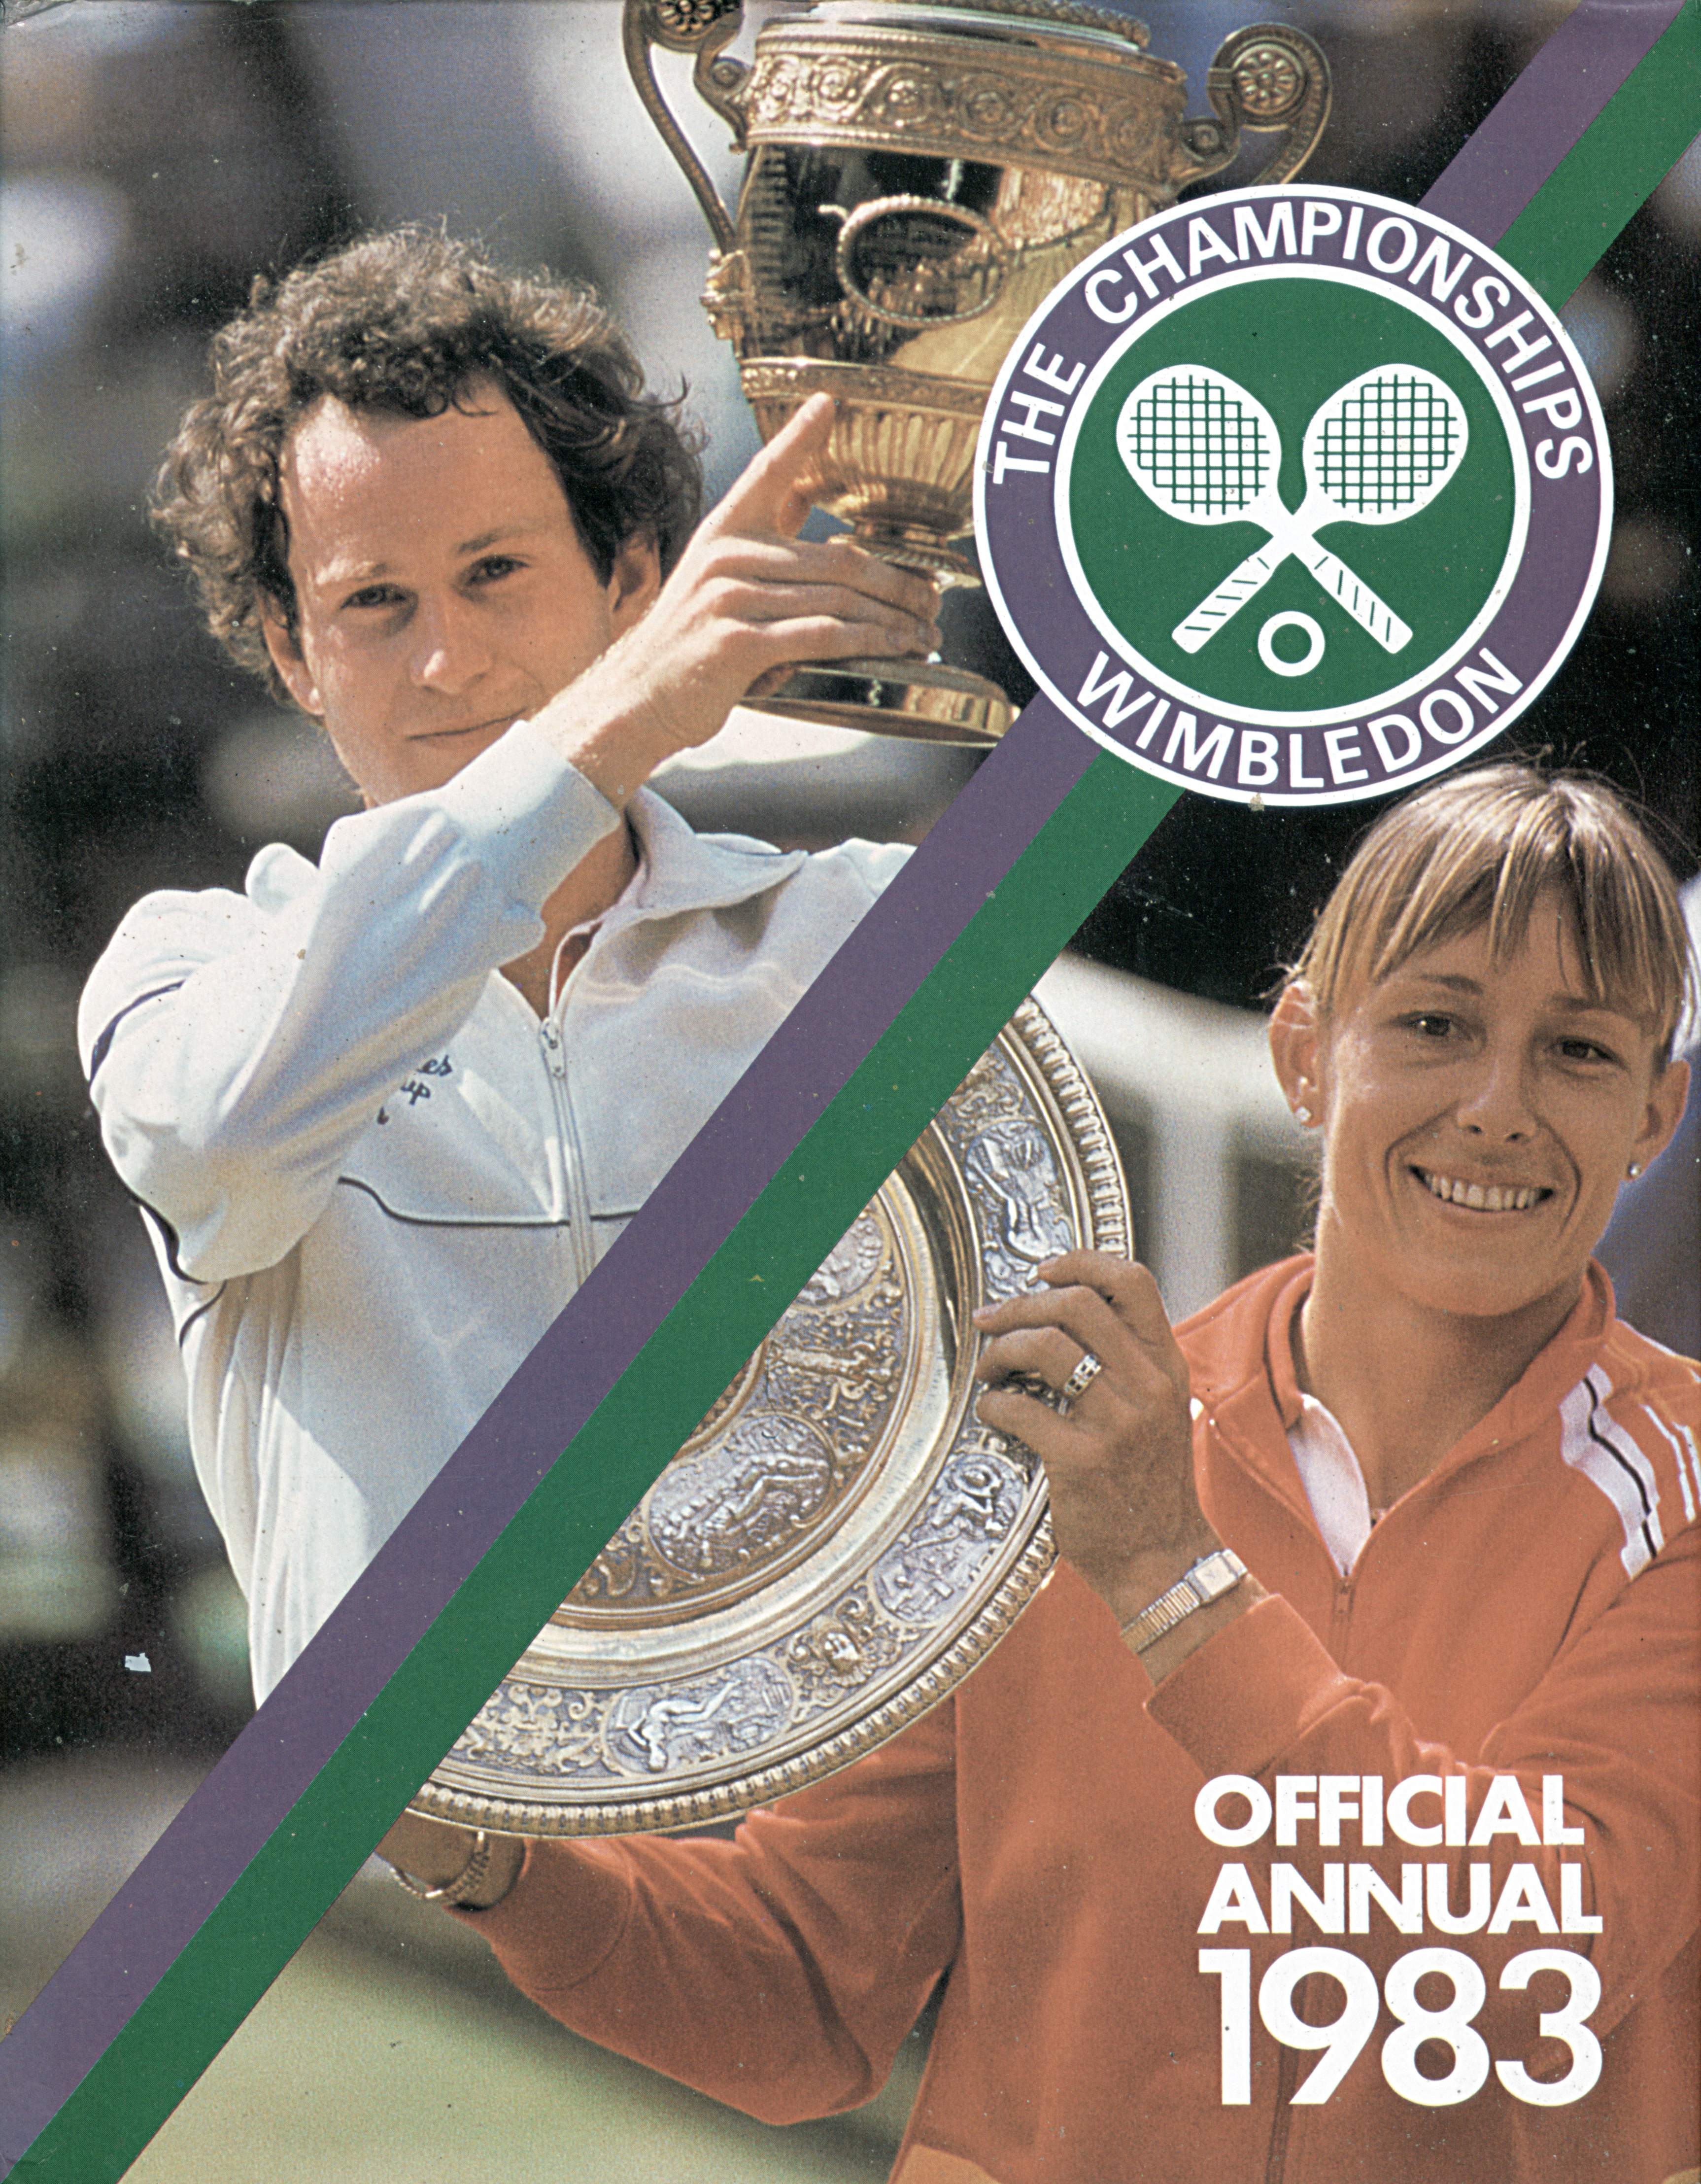 The Championships Wimbledon 1983